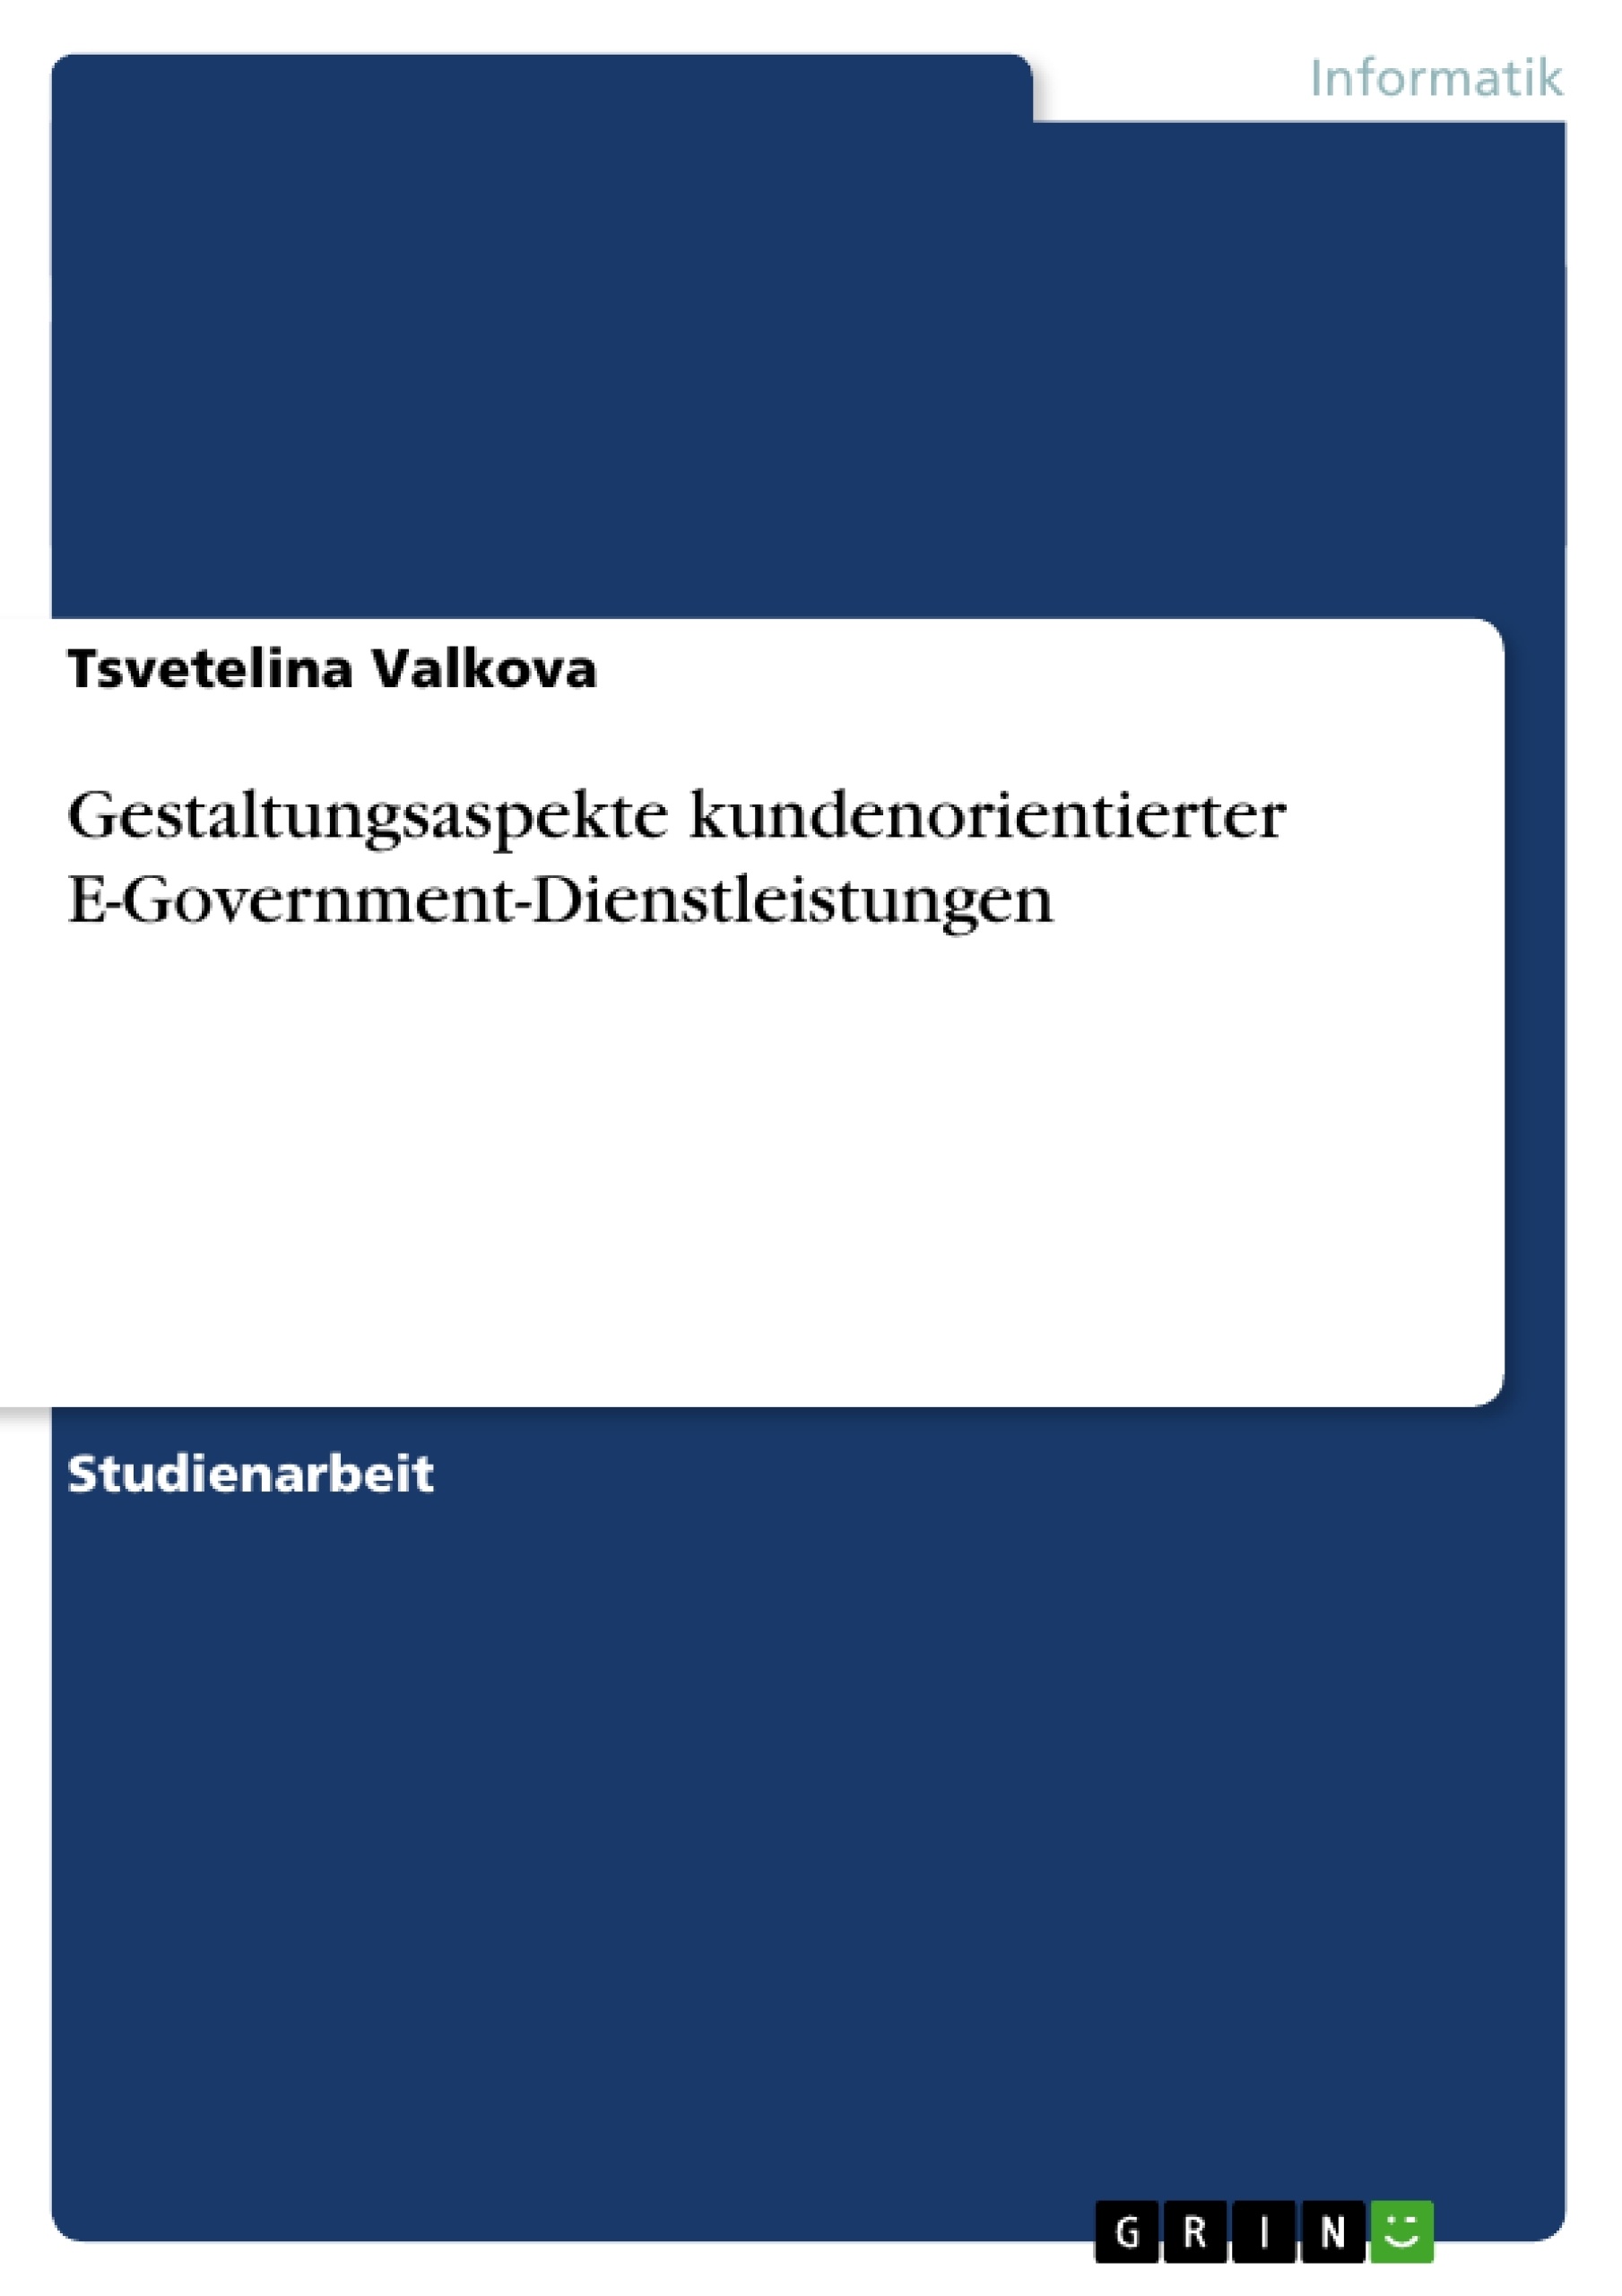 Title: Gestaltungsaspekte kundenorientierter E-Government-Dienstleistungen